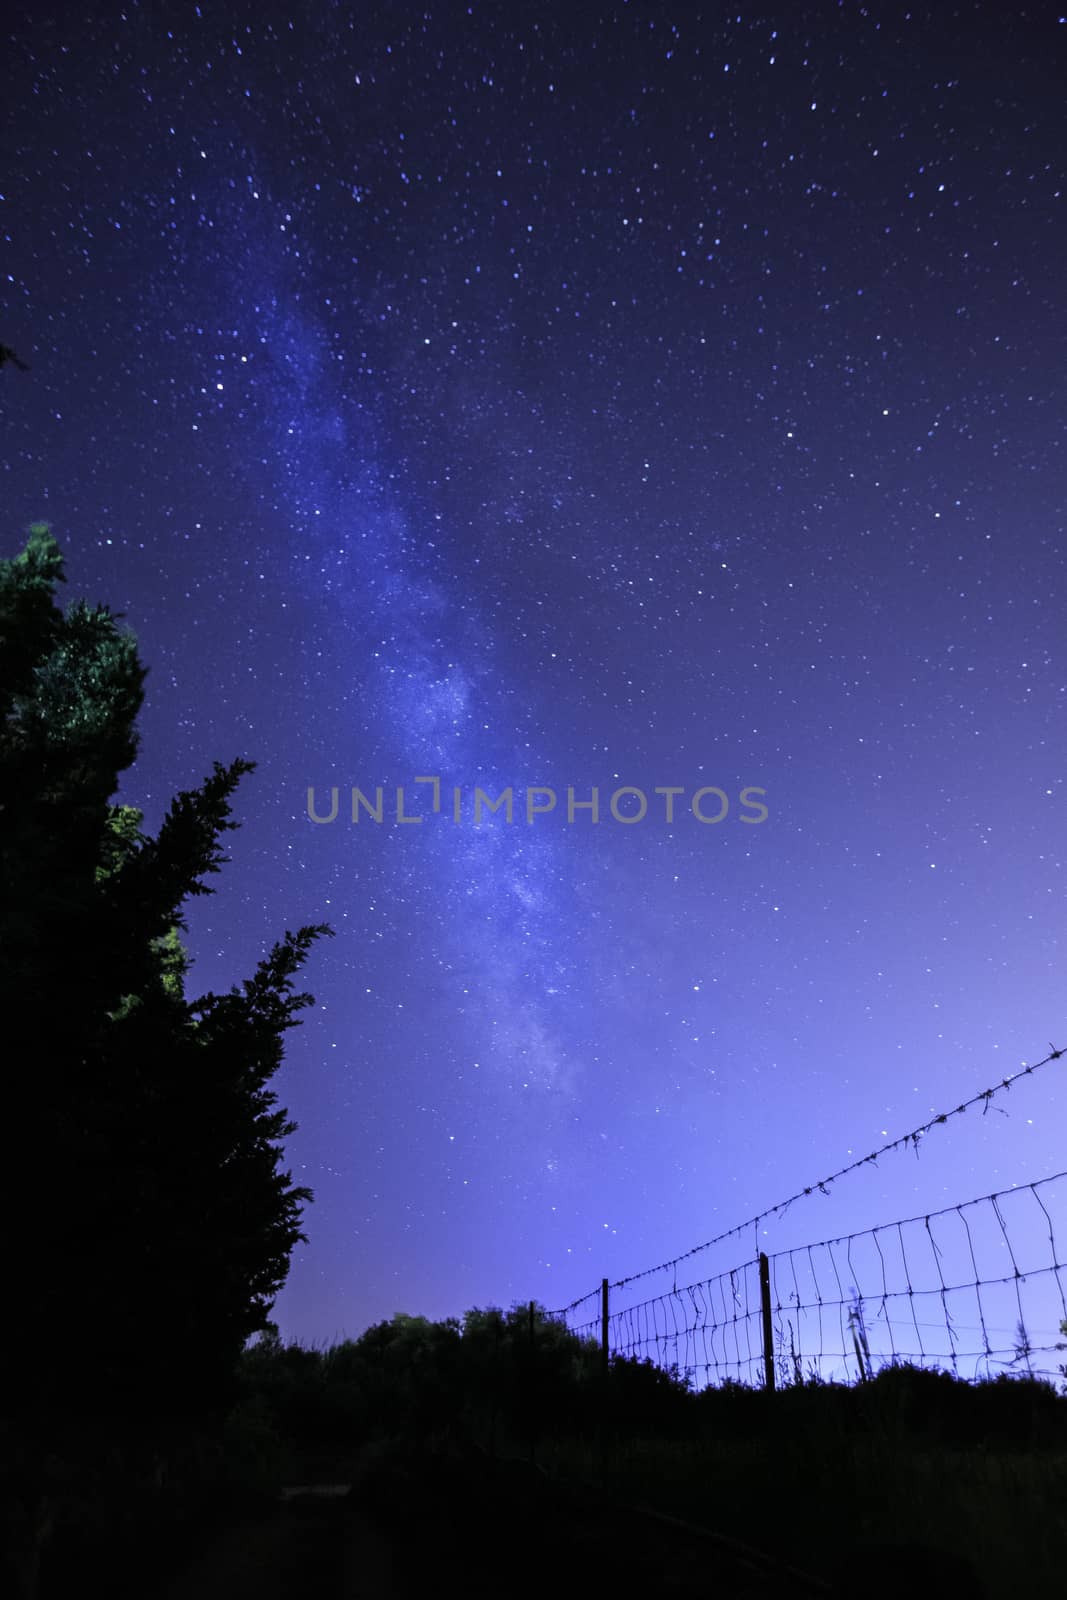 Milkyway in the sky of Sardinia, Italy